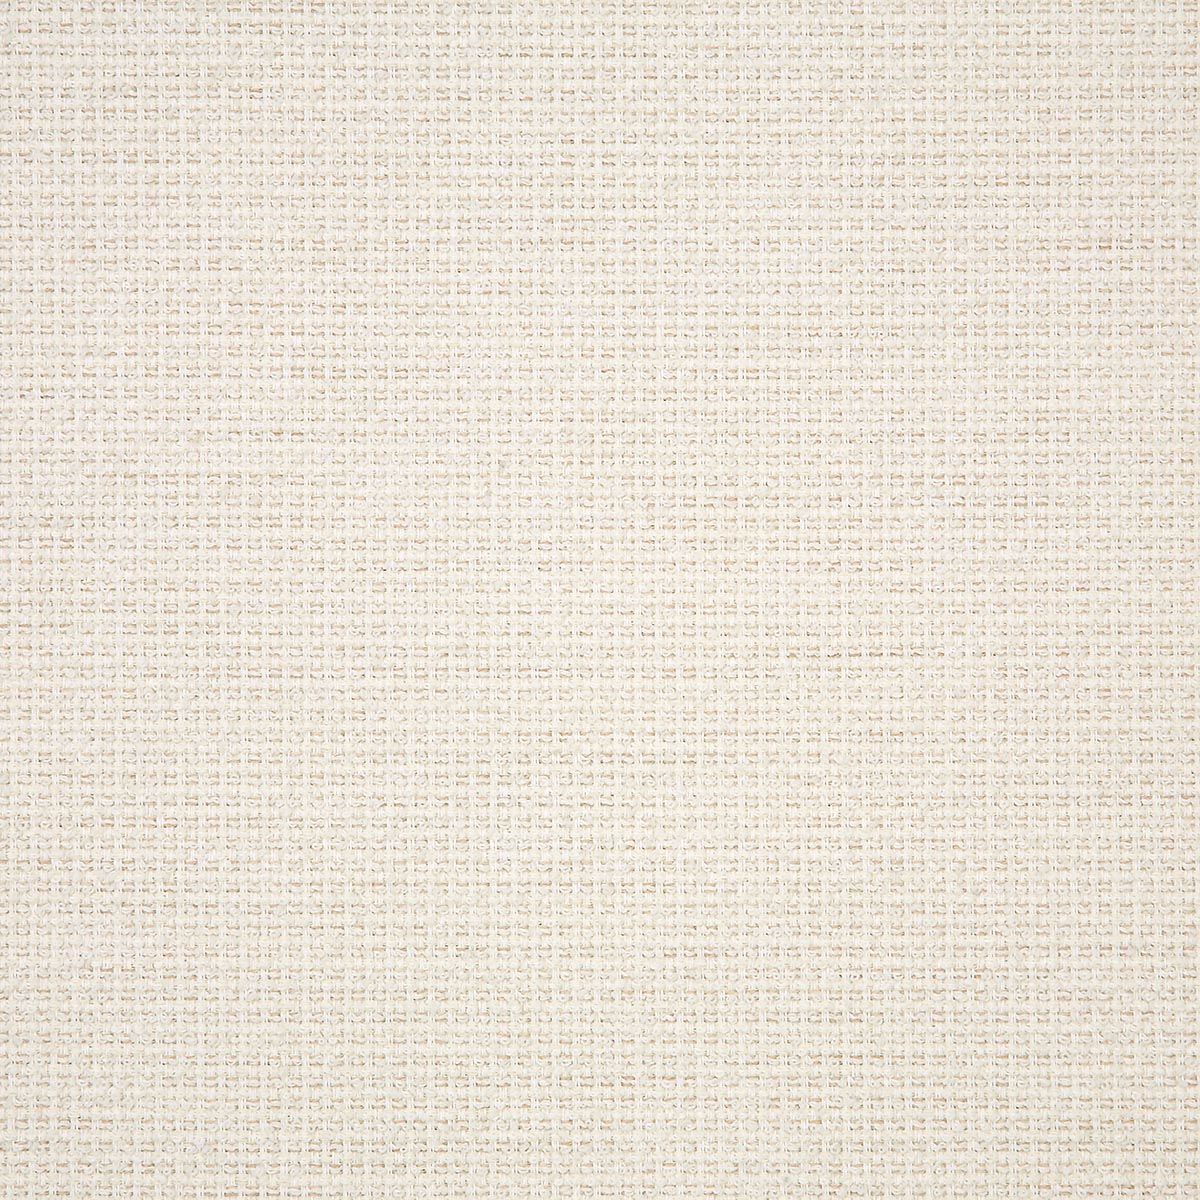 Sunbrella Fabric C Nurture White Swatch